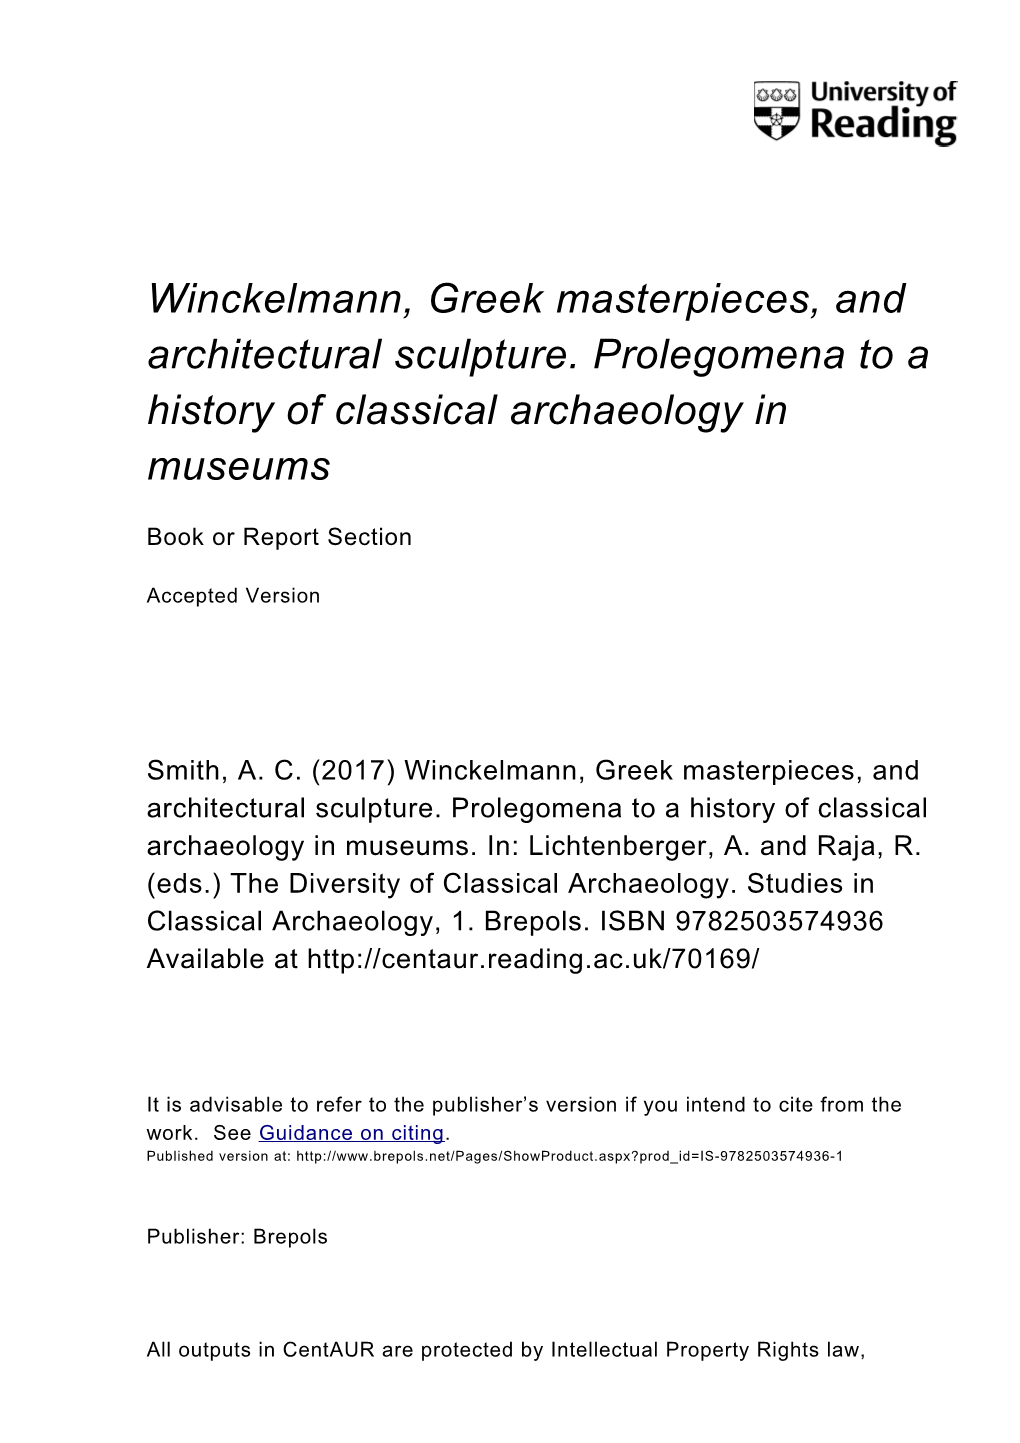 Winckelmann, Greek Masterpieces, and Architectural Sculpture